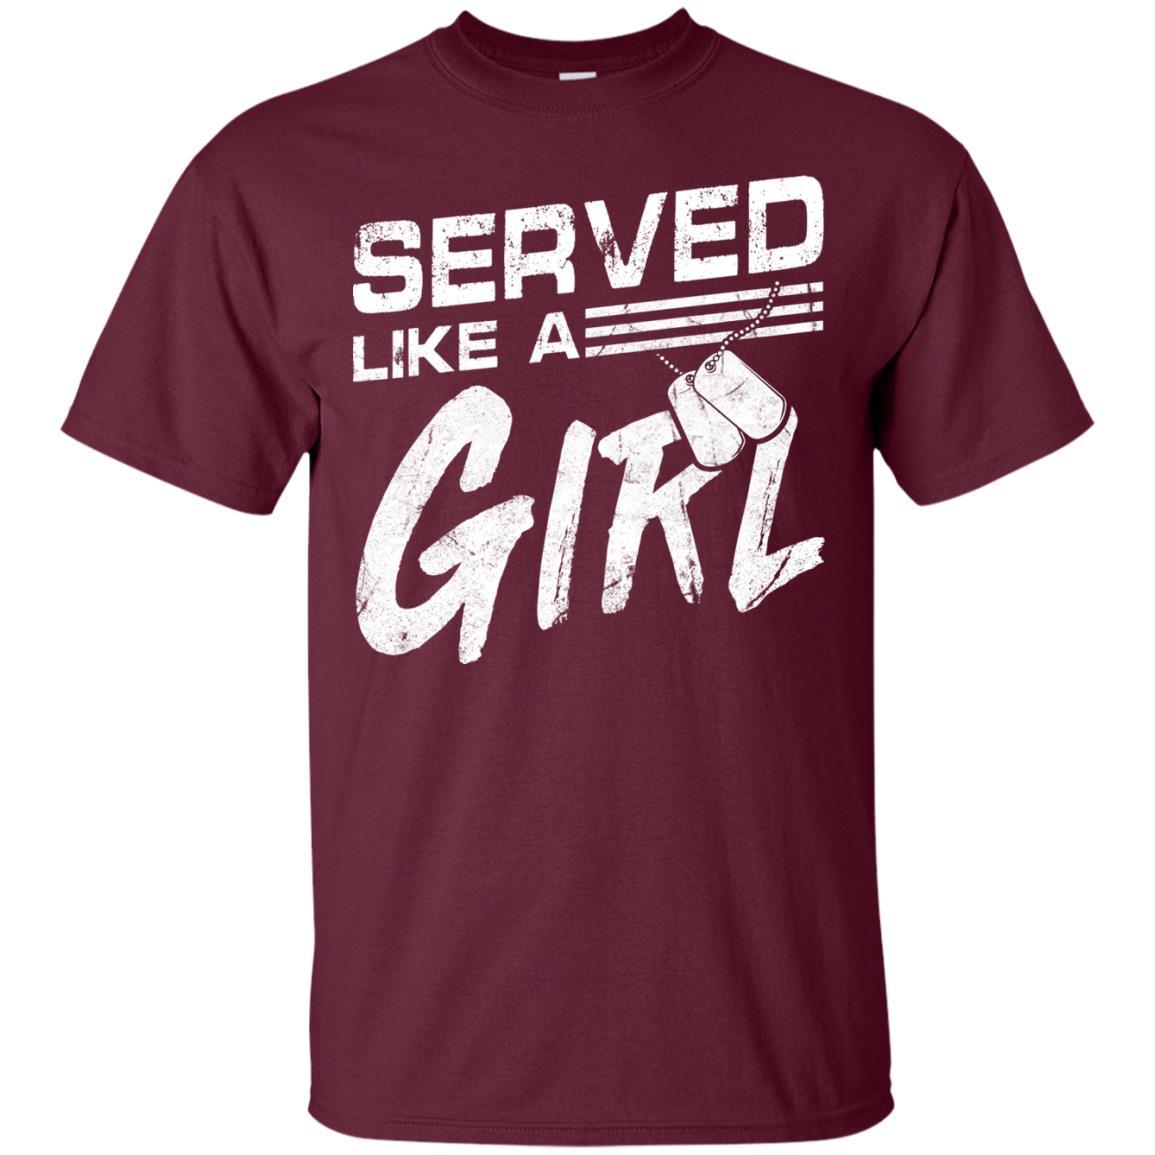 Military T-Shirt "Female Veterans Served Like A Girl Women On" Front-TShirt-General-Veterans Nation